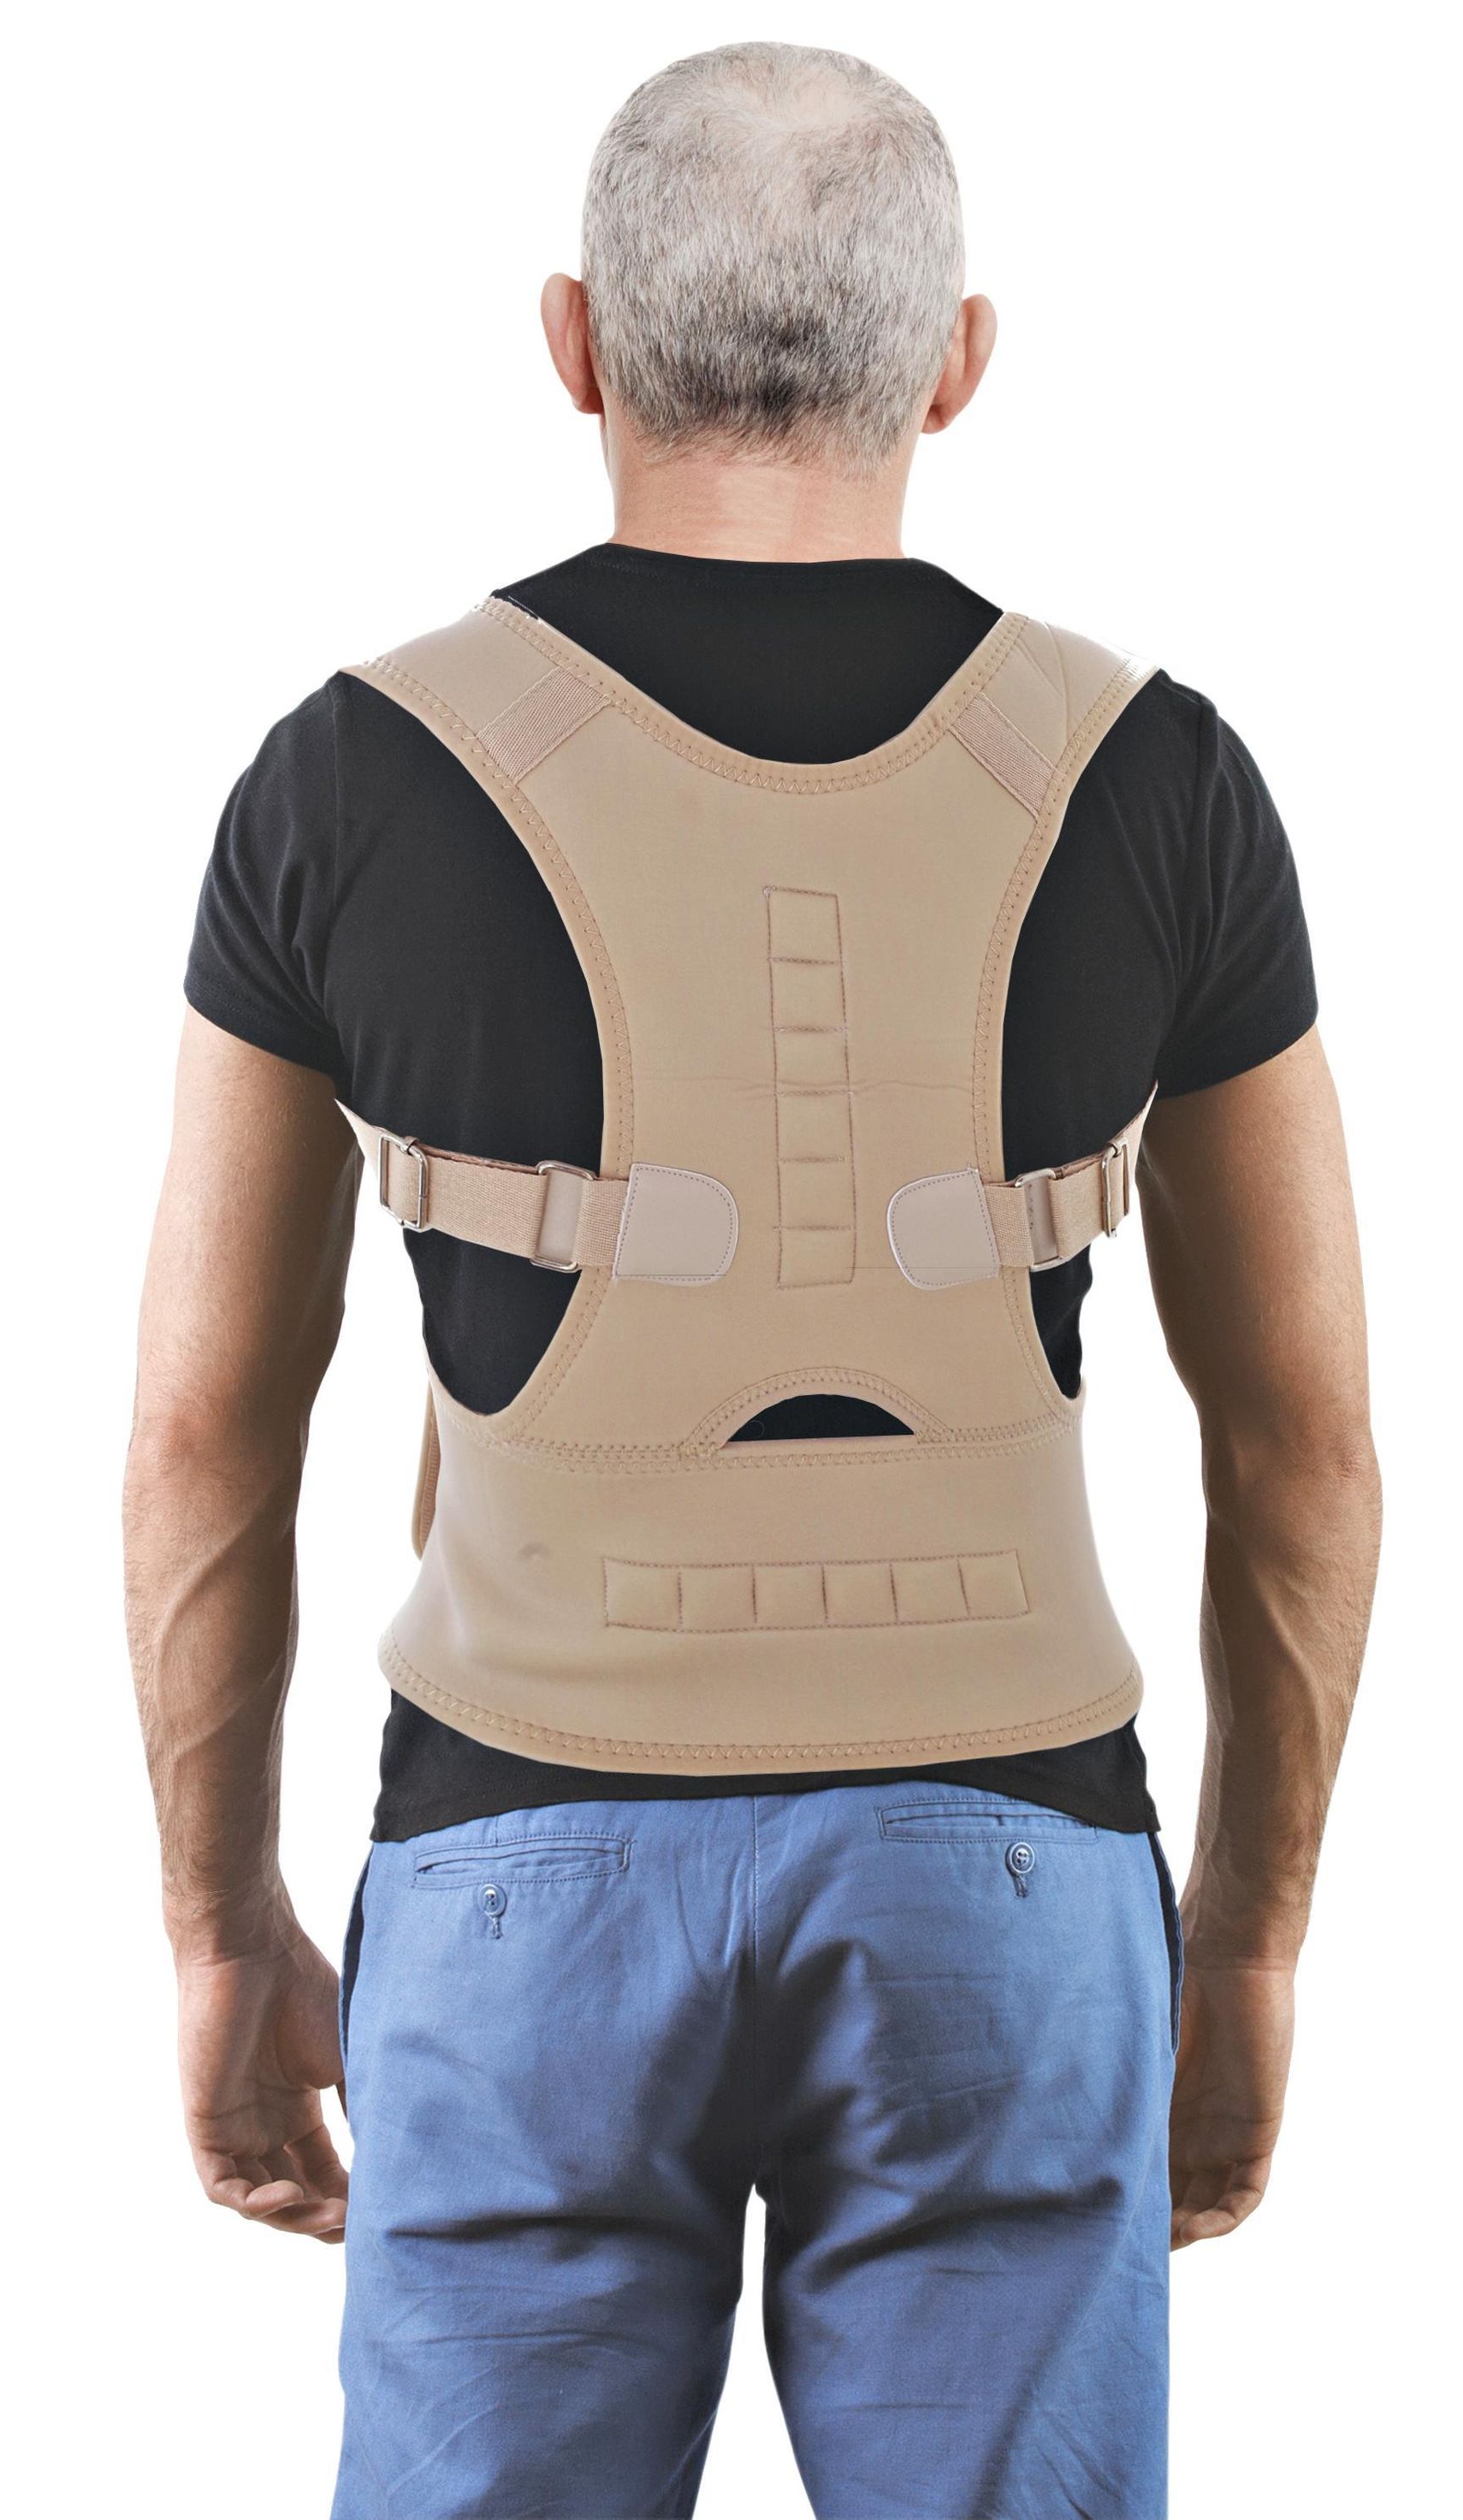 Haltungskorrektor Rücken-Bandage, Grösse: S & M | Weltbild.ch